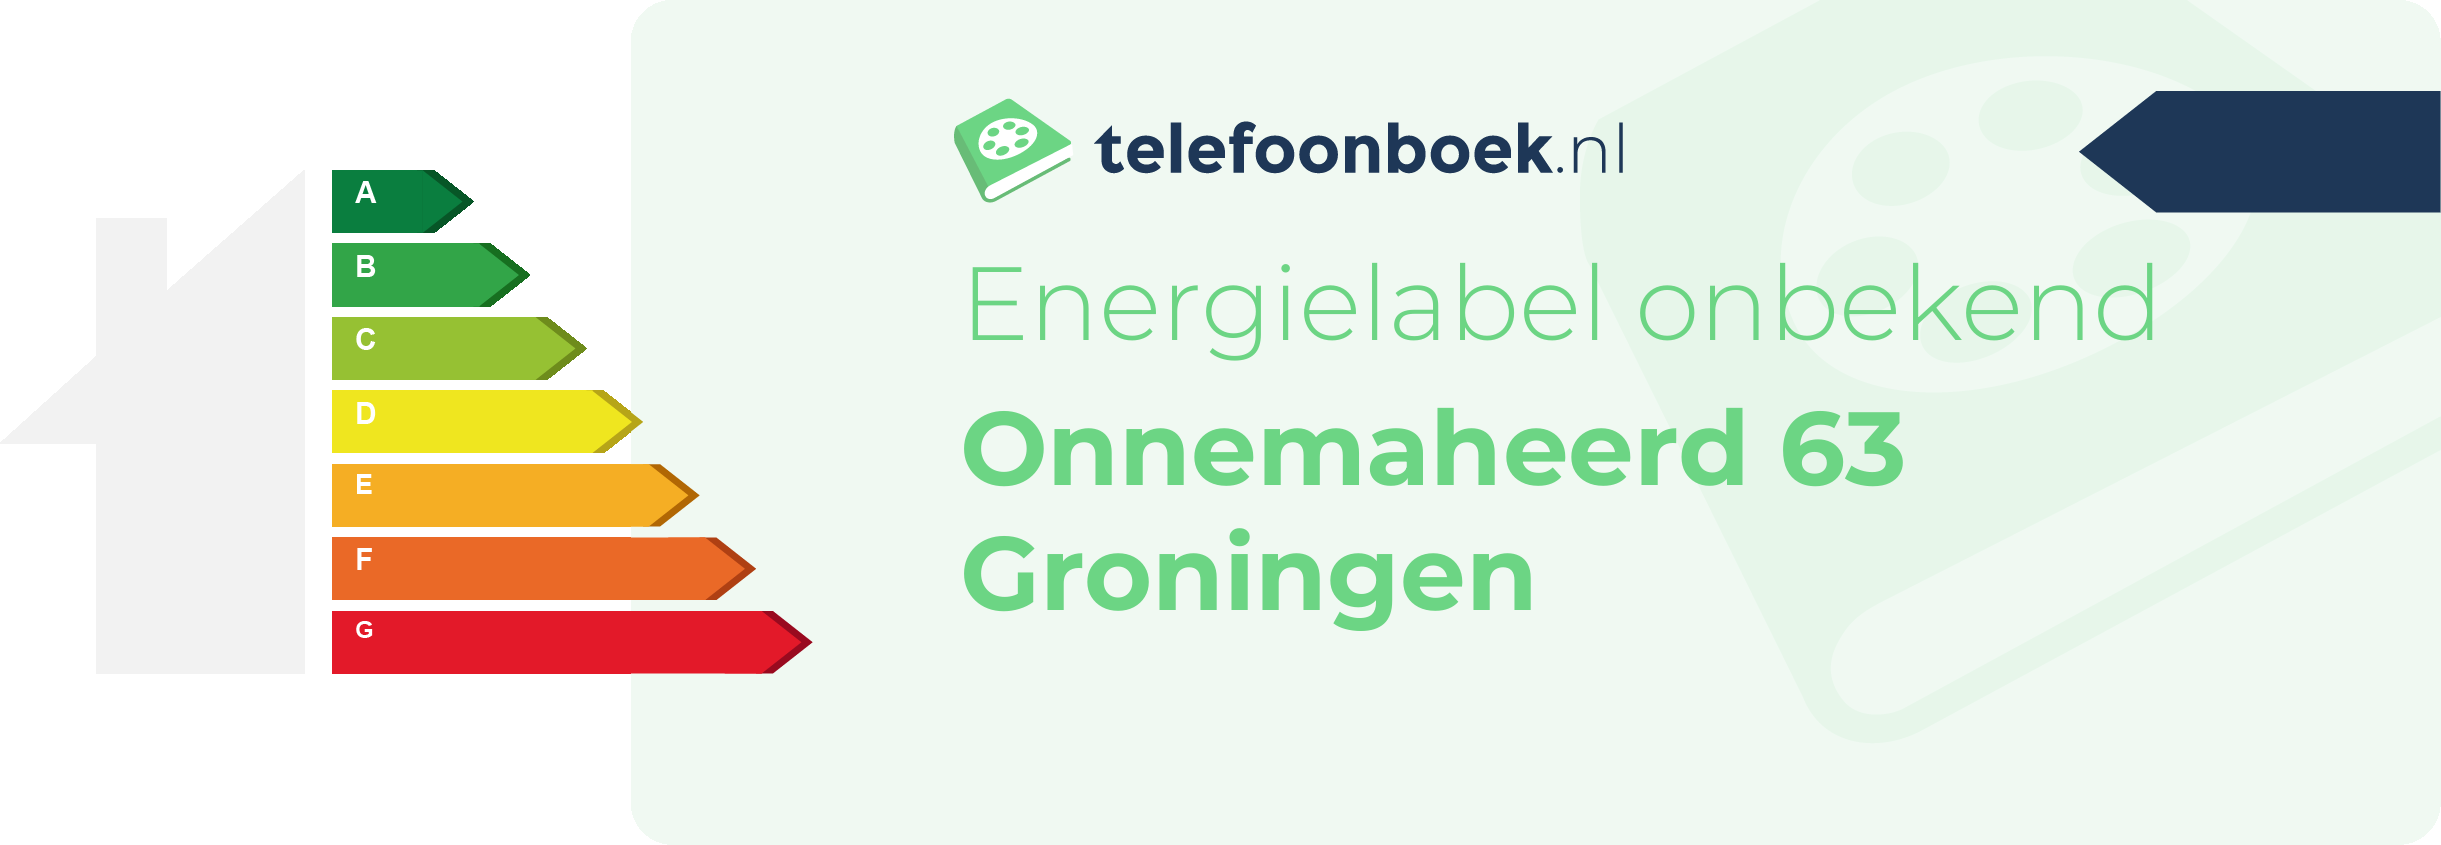 Energielabel Onnemaheerd 63 Groningen